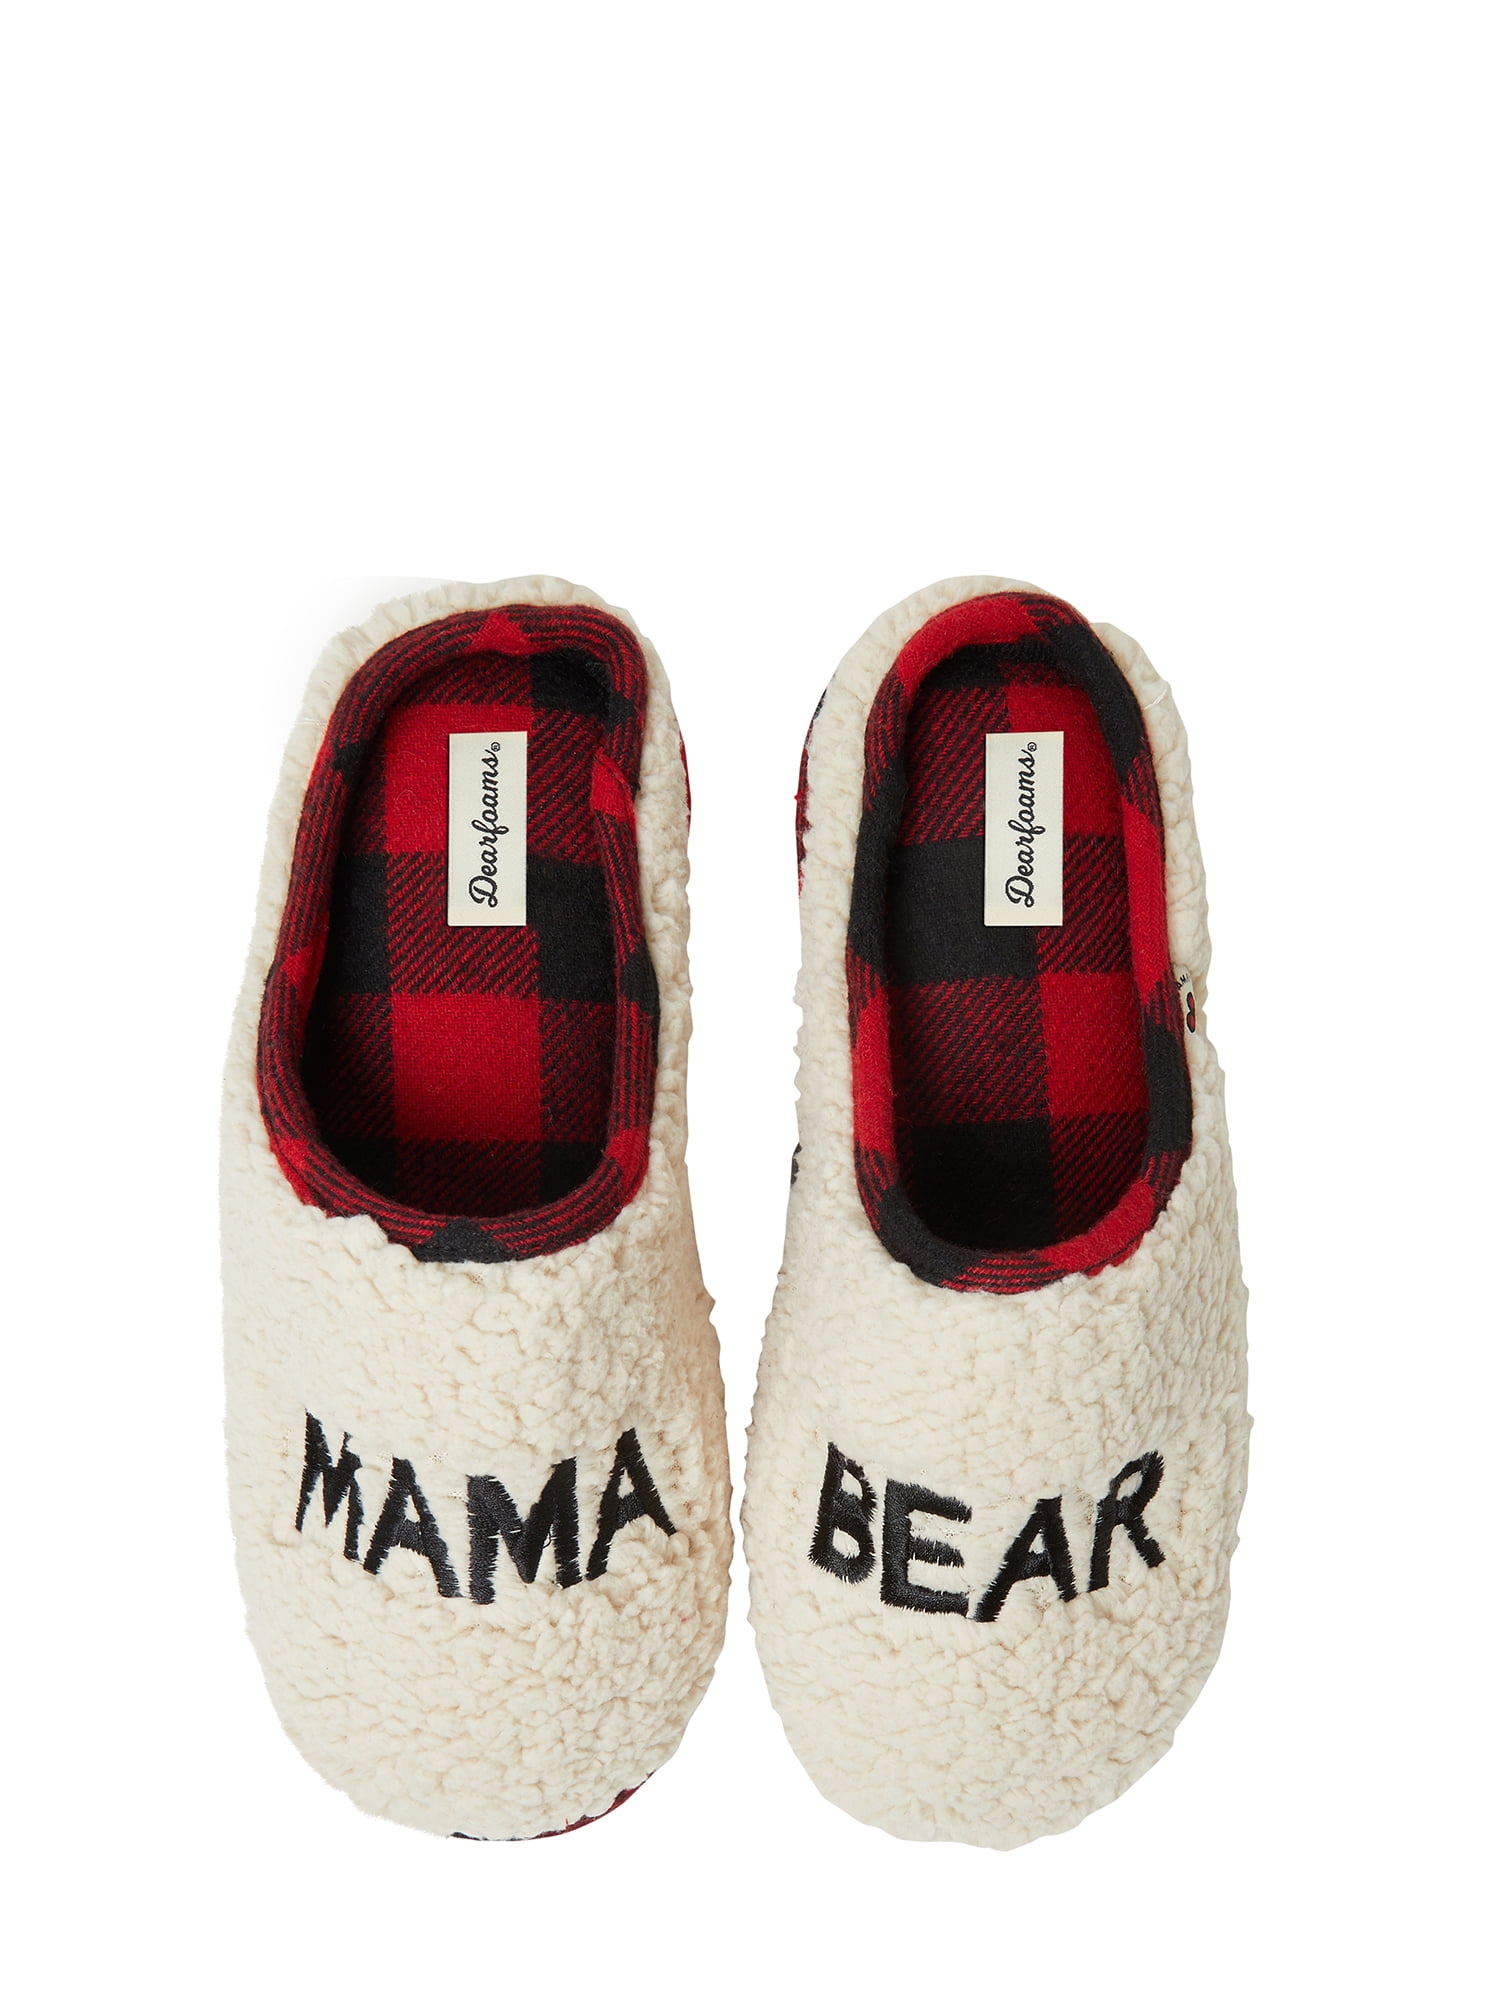 dearfoams mama bear